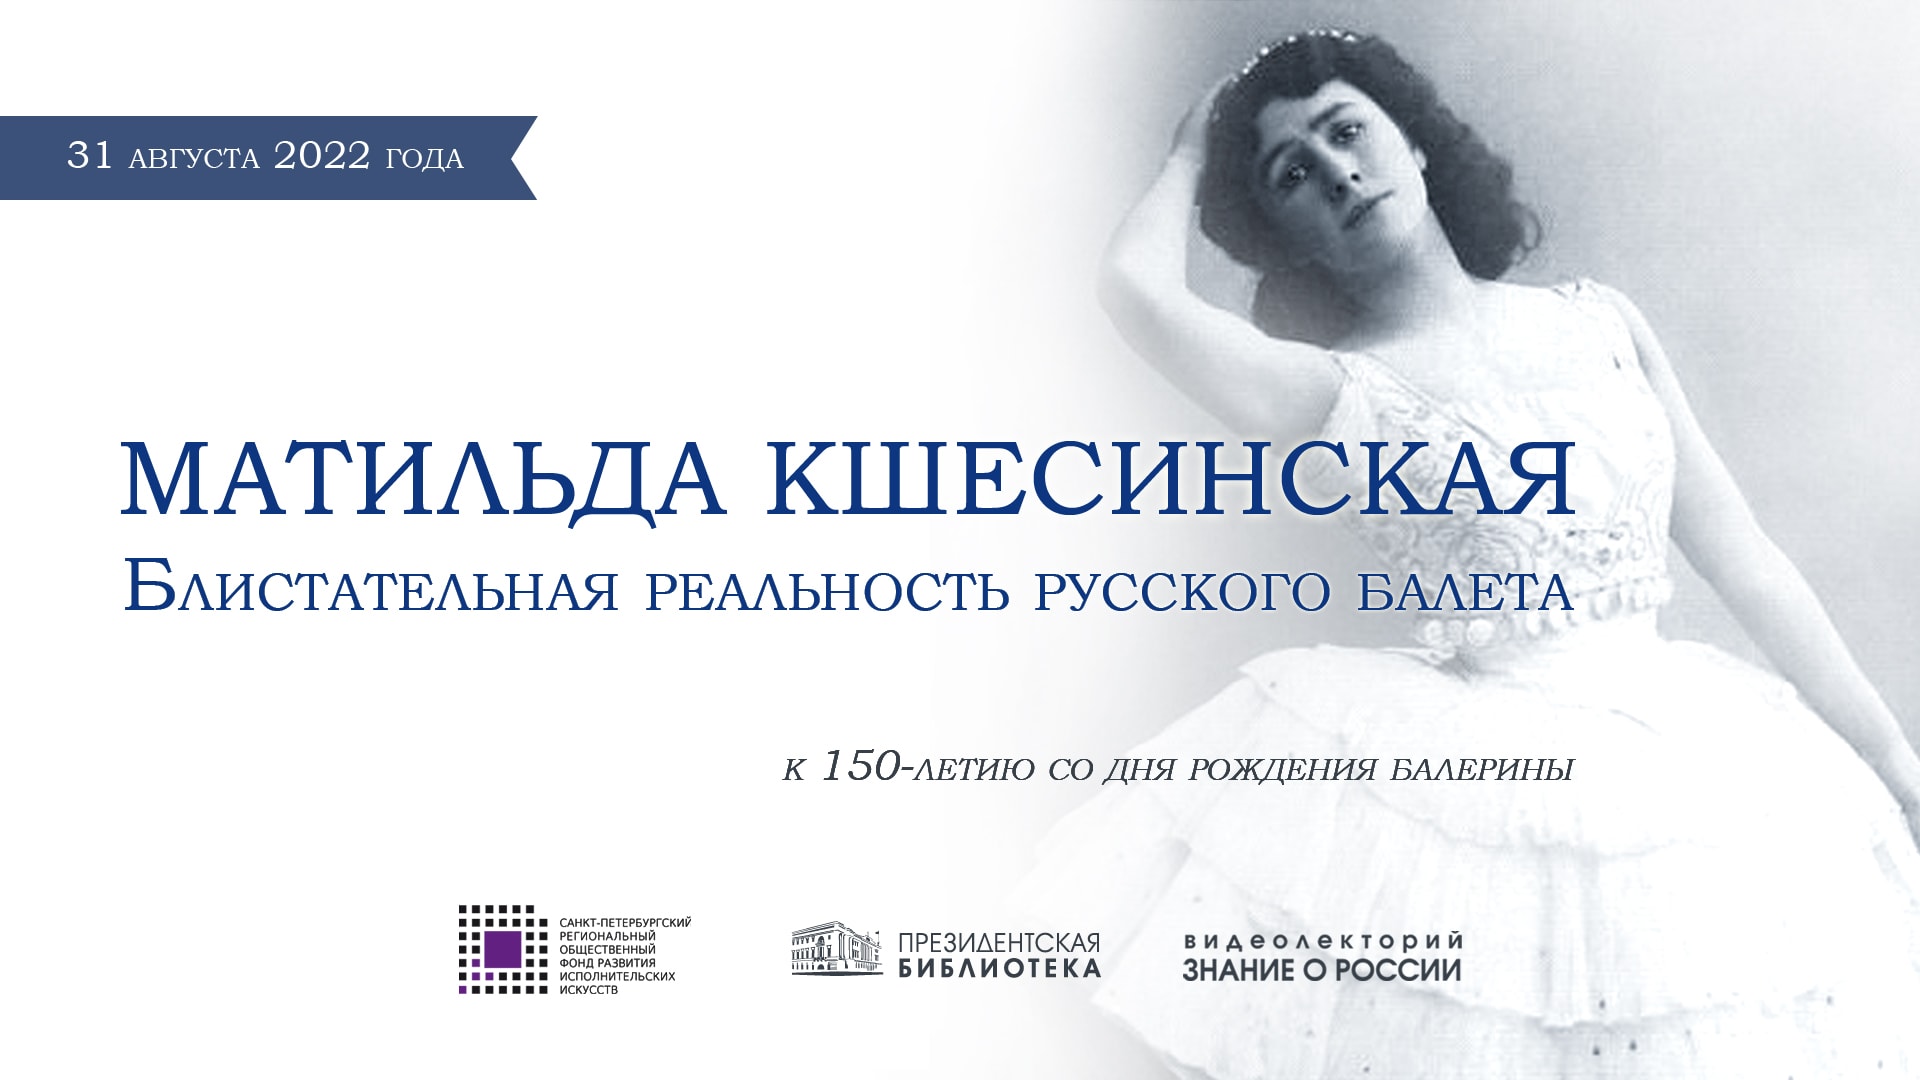 К 150-летию Матильды Кшесинской в Президентской библиотеке расскажут о посвящённом ей AR-спектакле